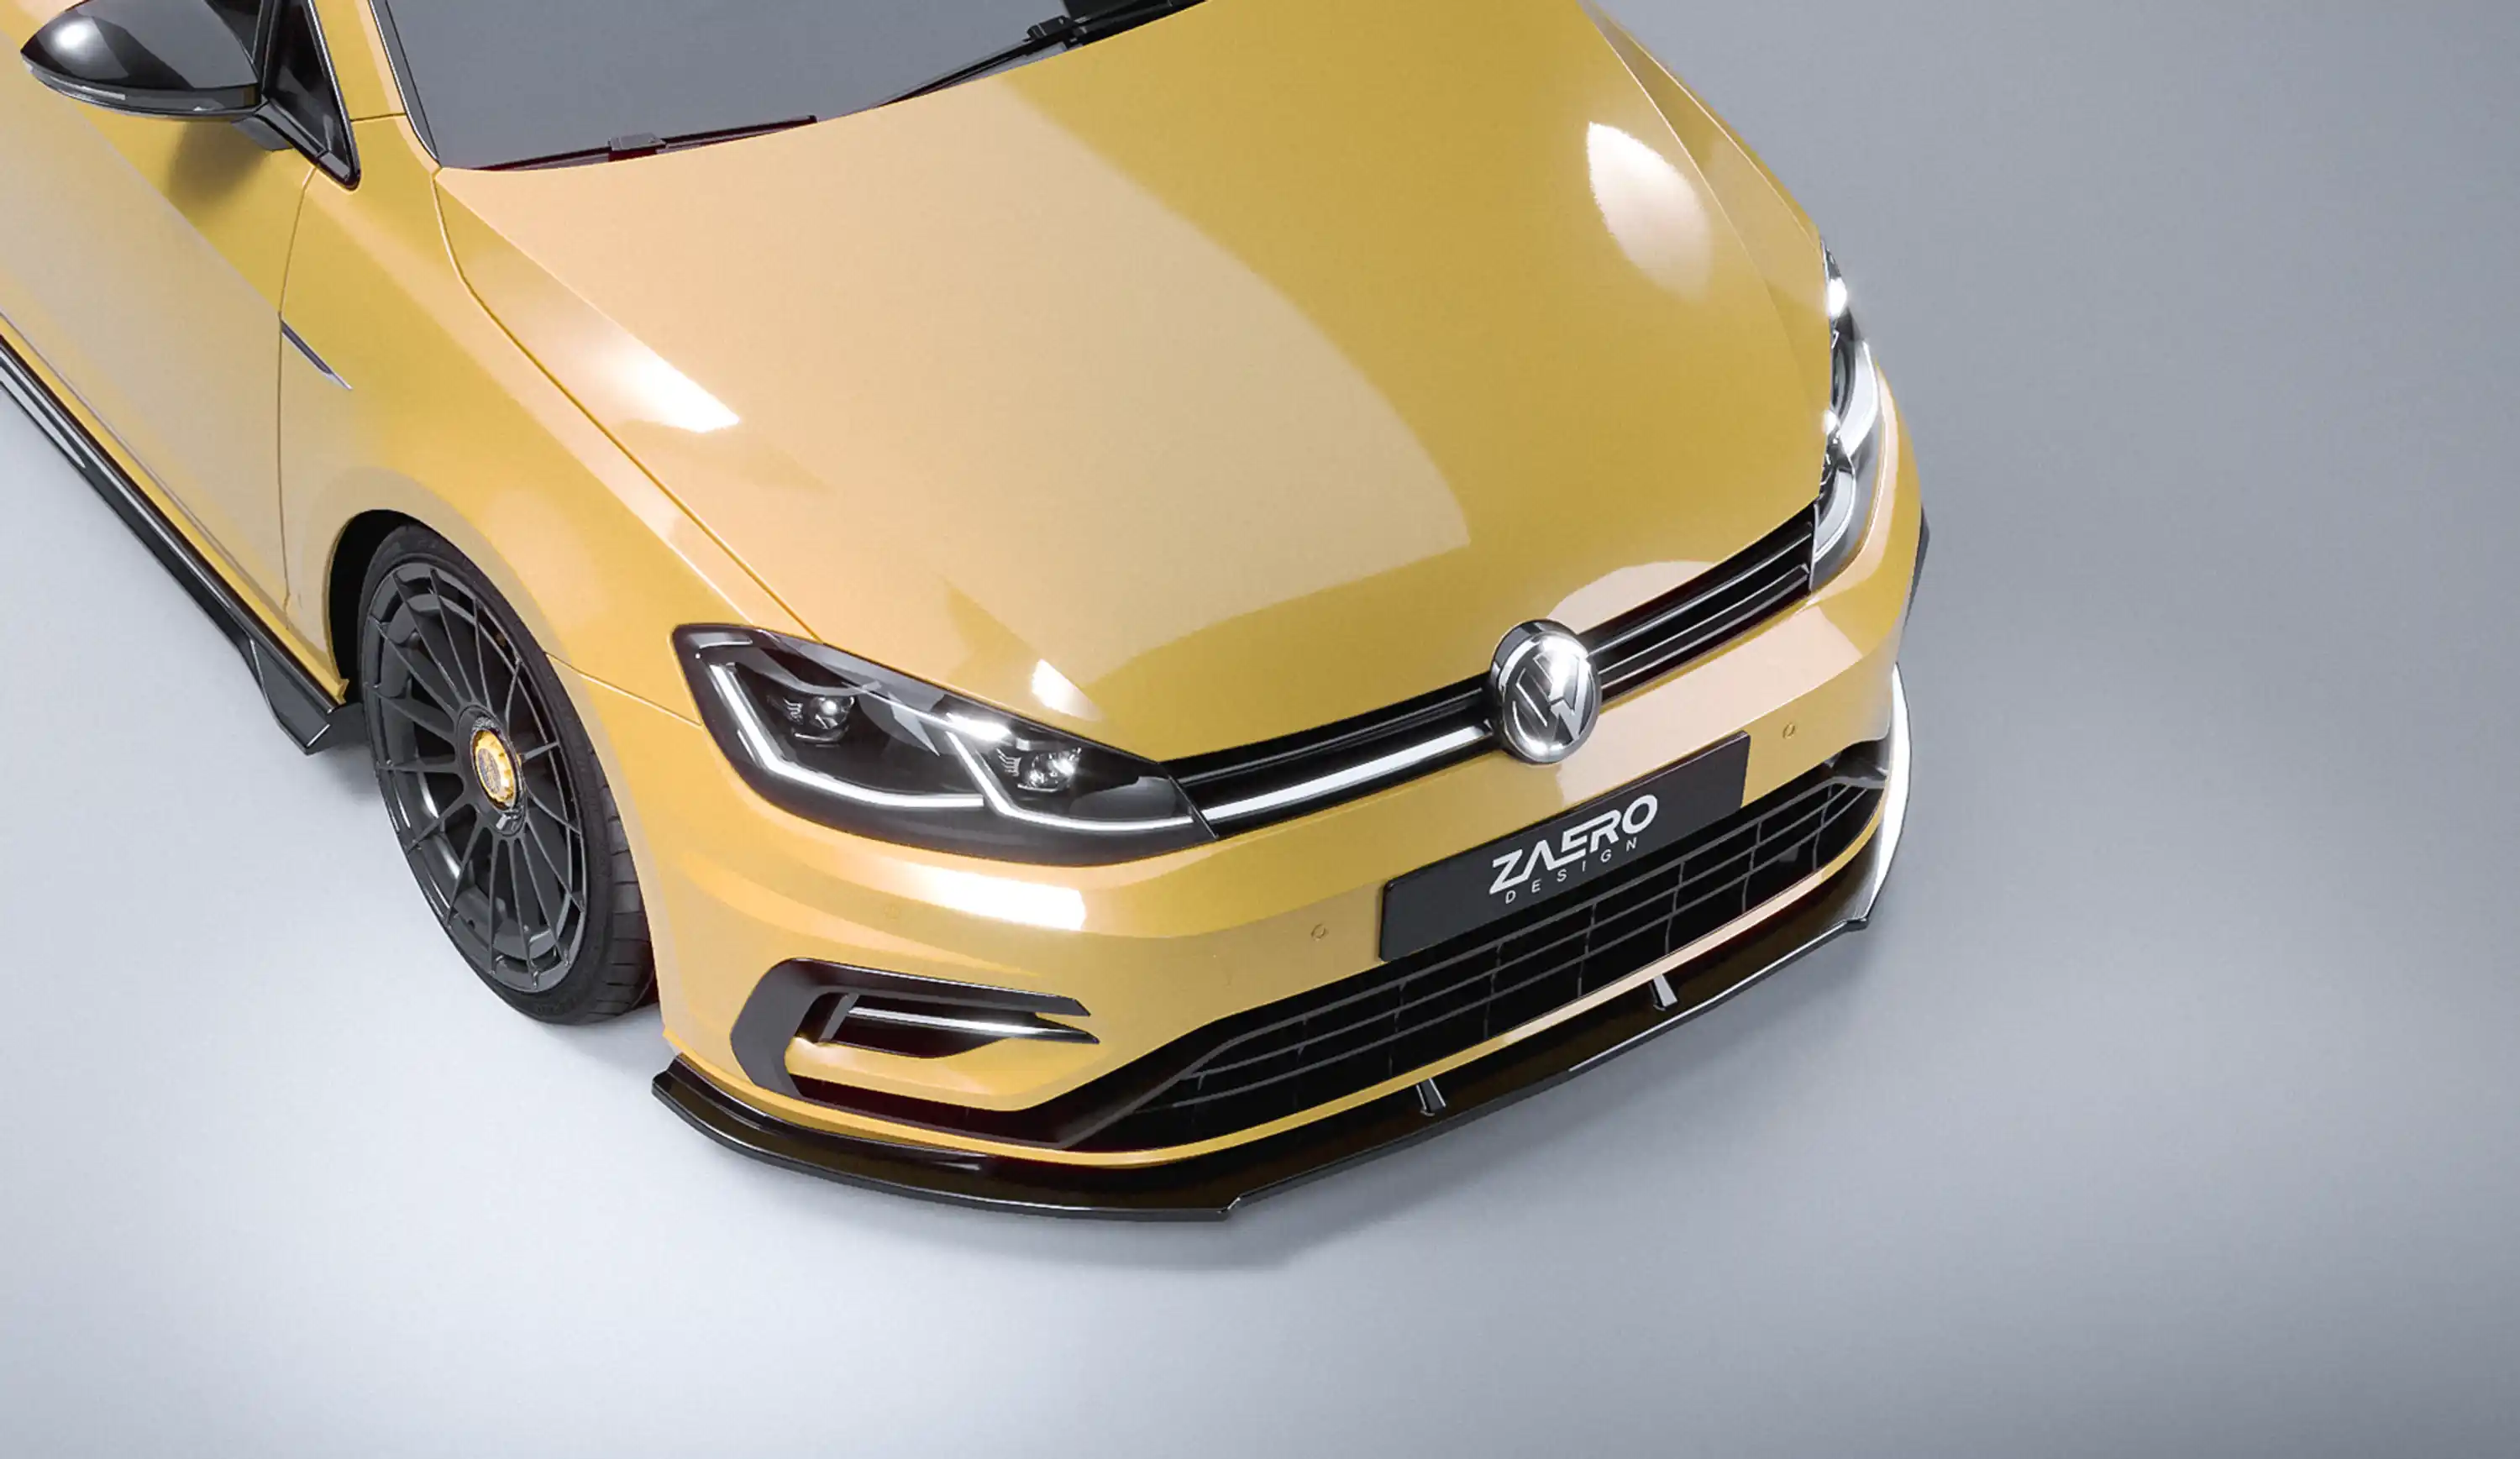 front splitter by ZAERO DESIGN for VW Golf 7.5 R (2017 – 2019)